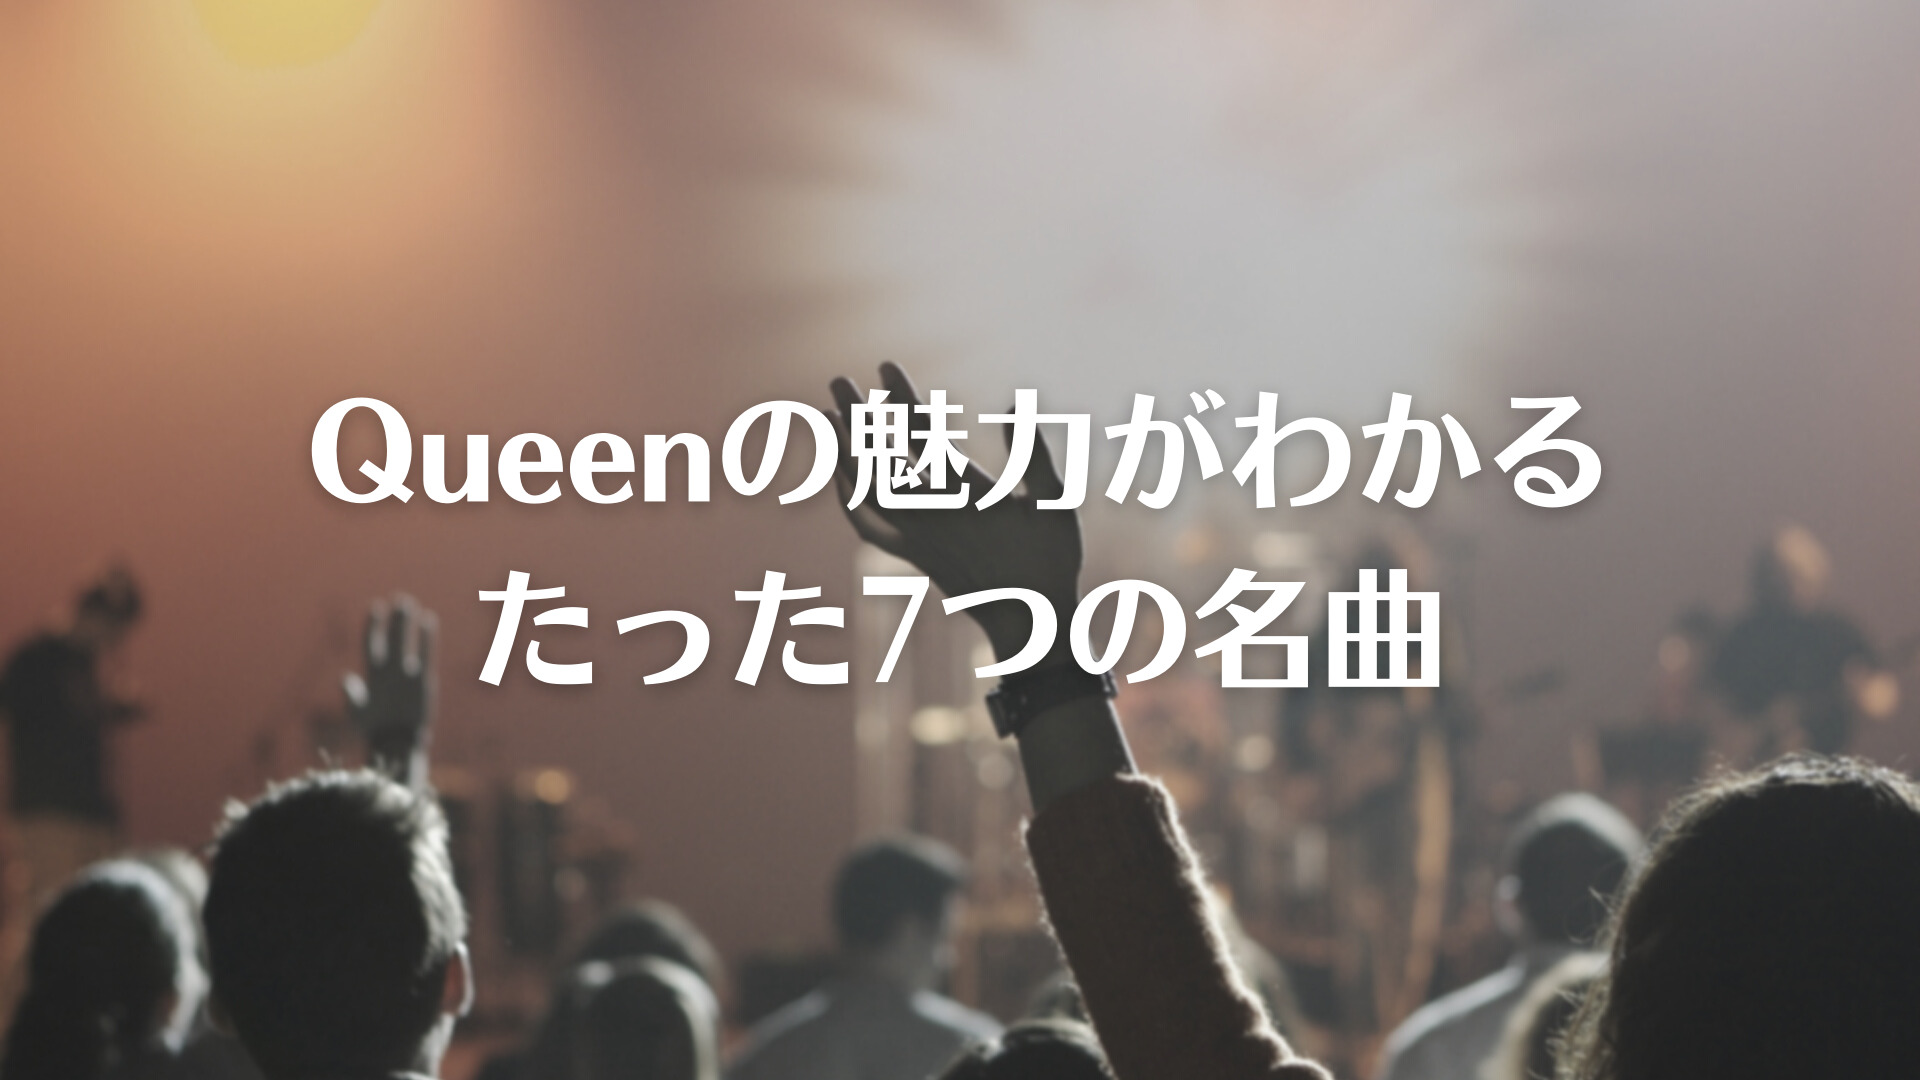 Queen クィーン の魅力がわかるたった7つの名曲 ベア三郎のおすすめ雑記